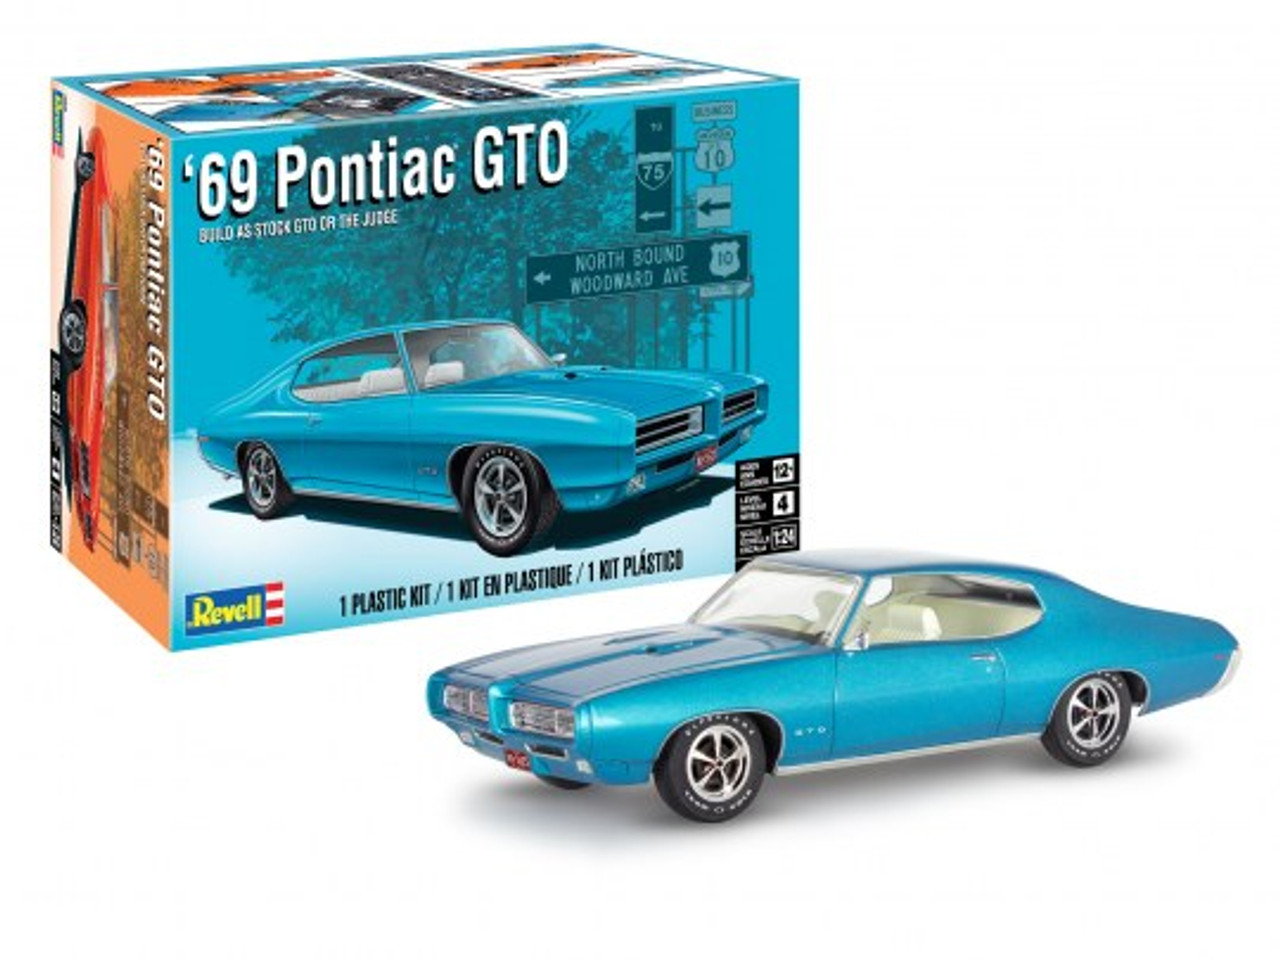 Revell 14530 1/24 69 Pontiac GTO "The Judge" 2N1 Plastic Model Kit